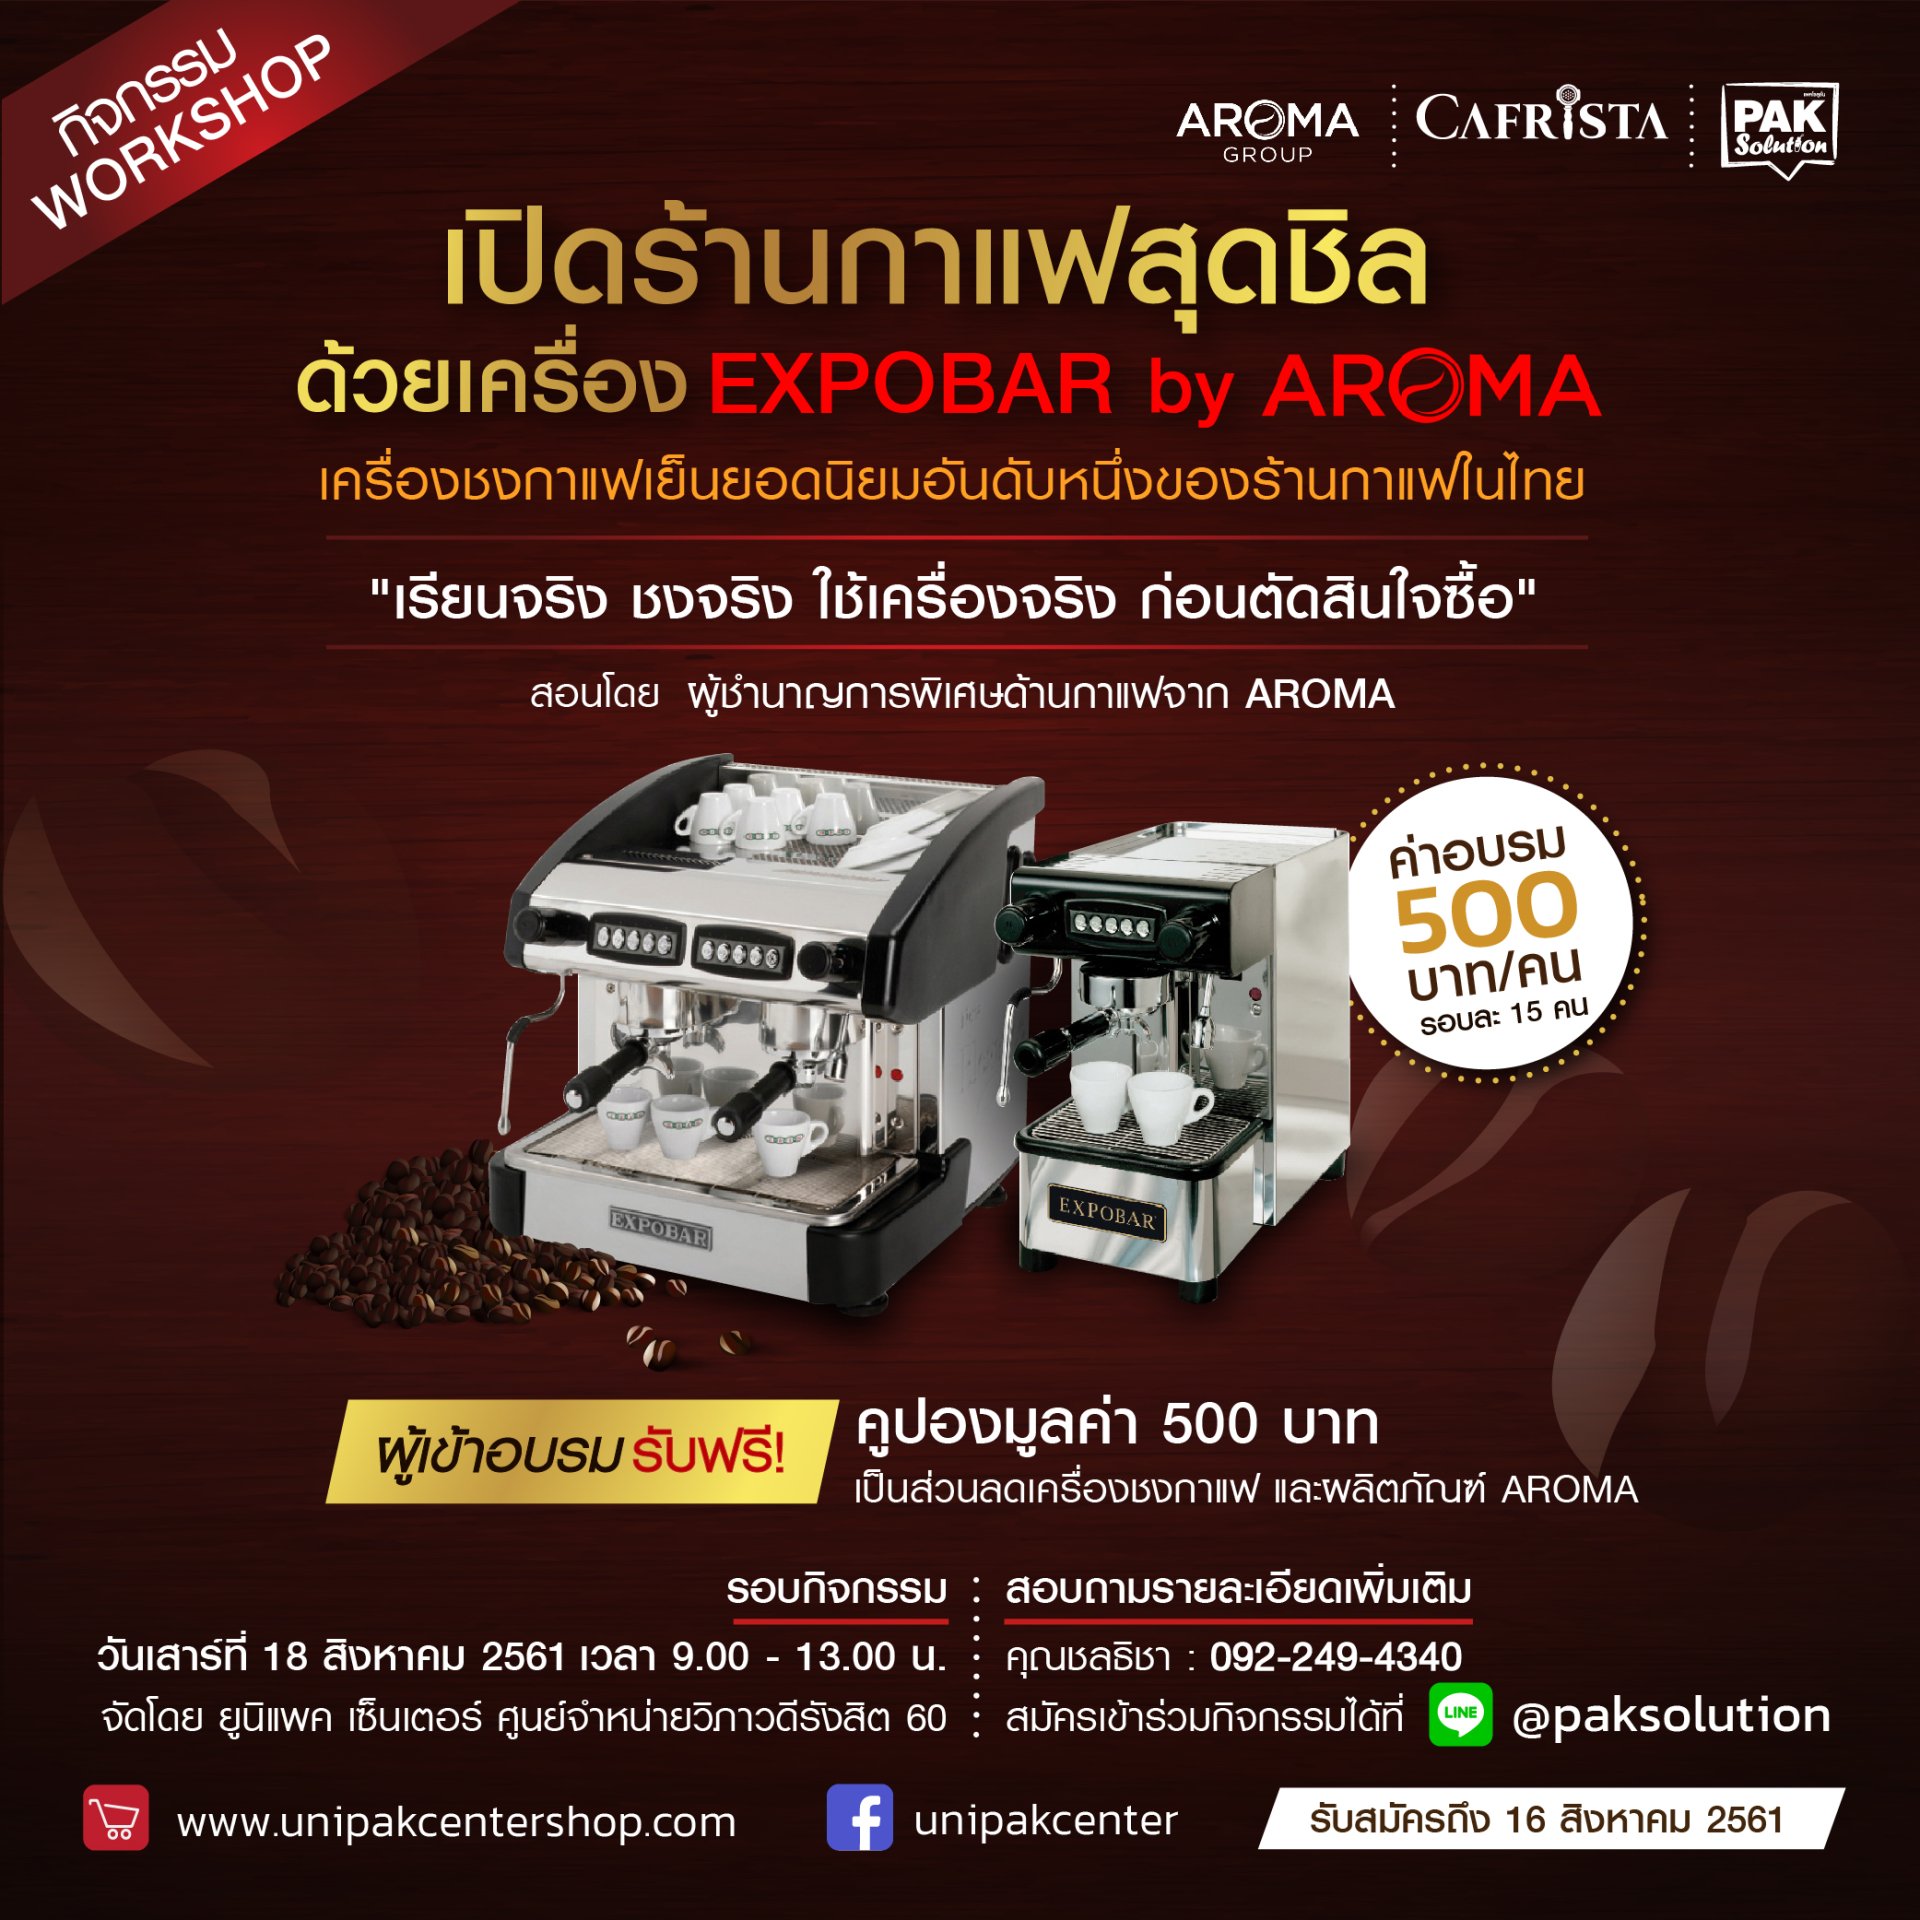 เปิดร้านกาแฟสุดชิล ด้วยเครื่อง EXPOBAR จาก AROMA